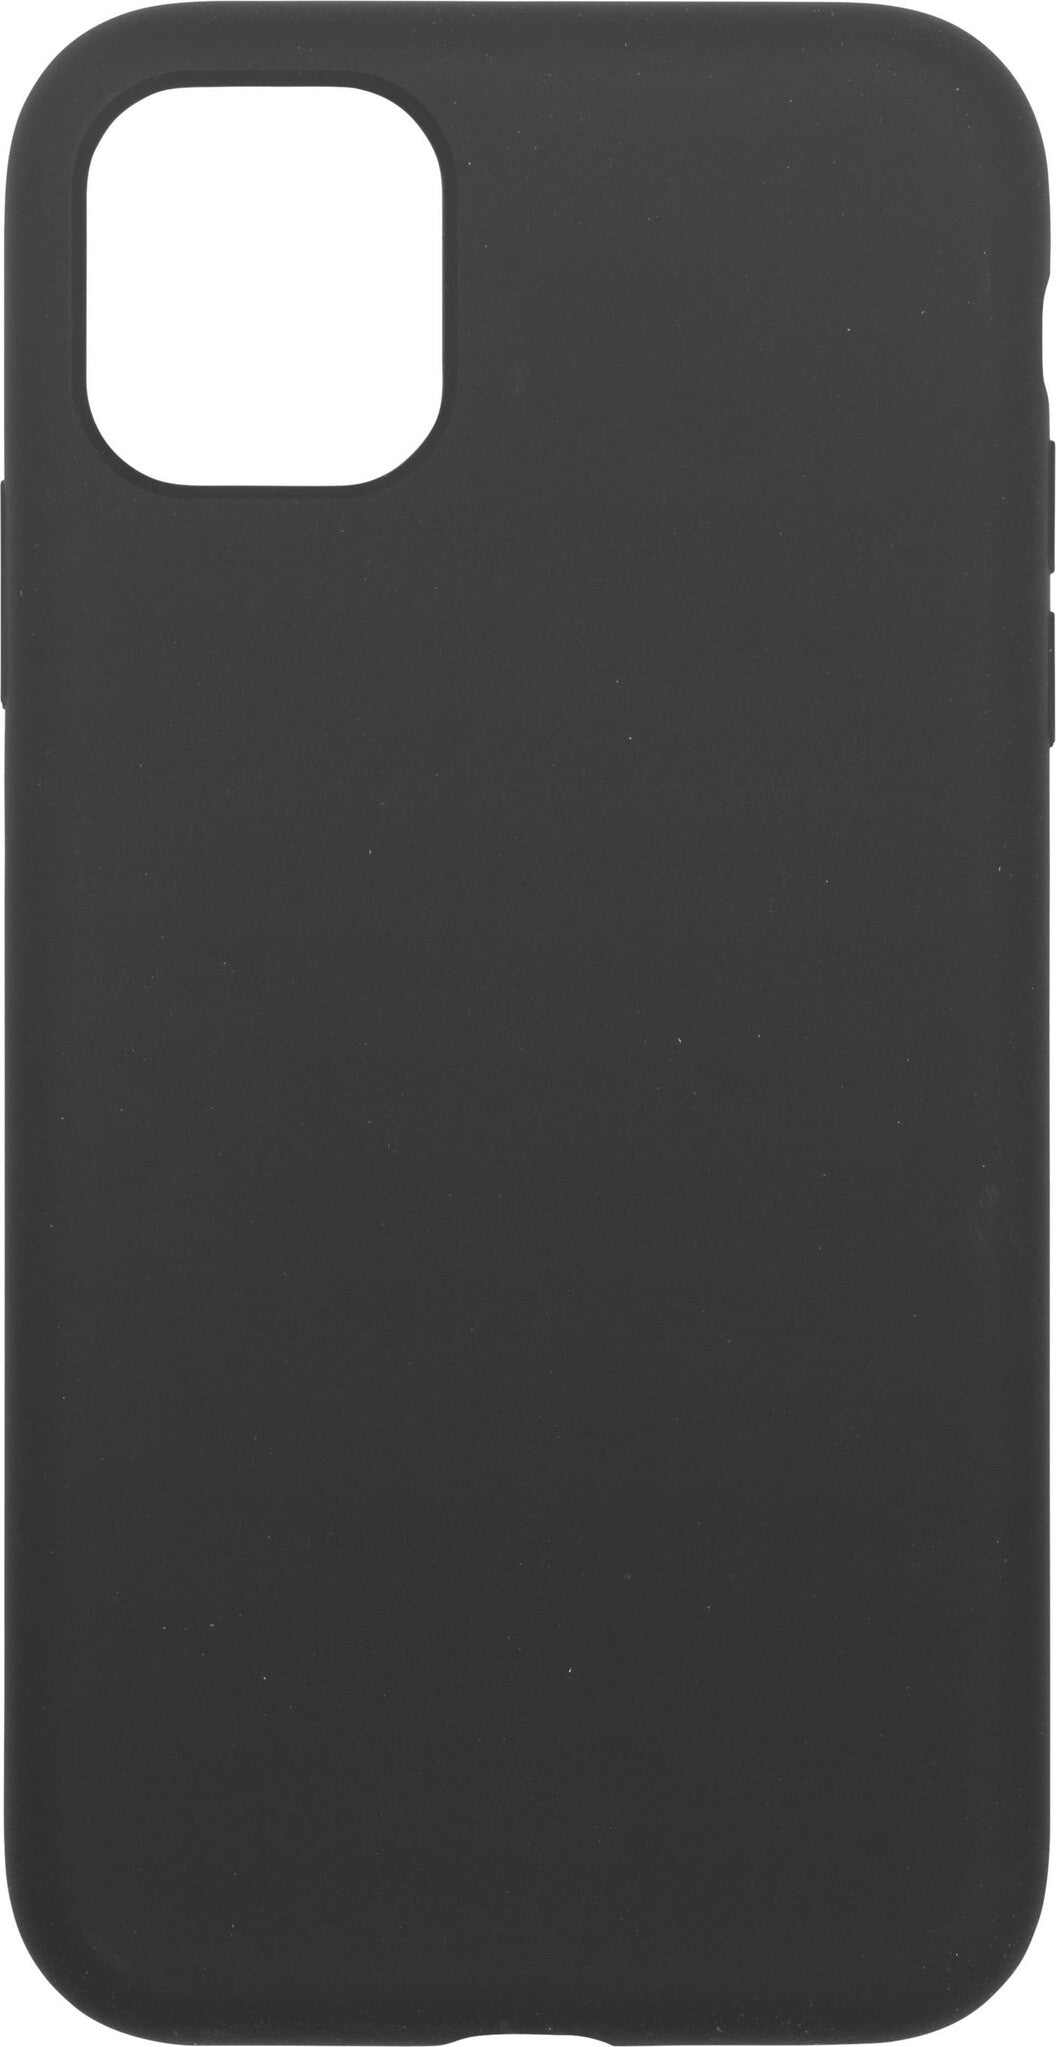 eSTUFF INFINITE RIGA silicone mobile phone case for iPhone 11 in Black